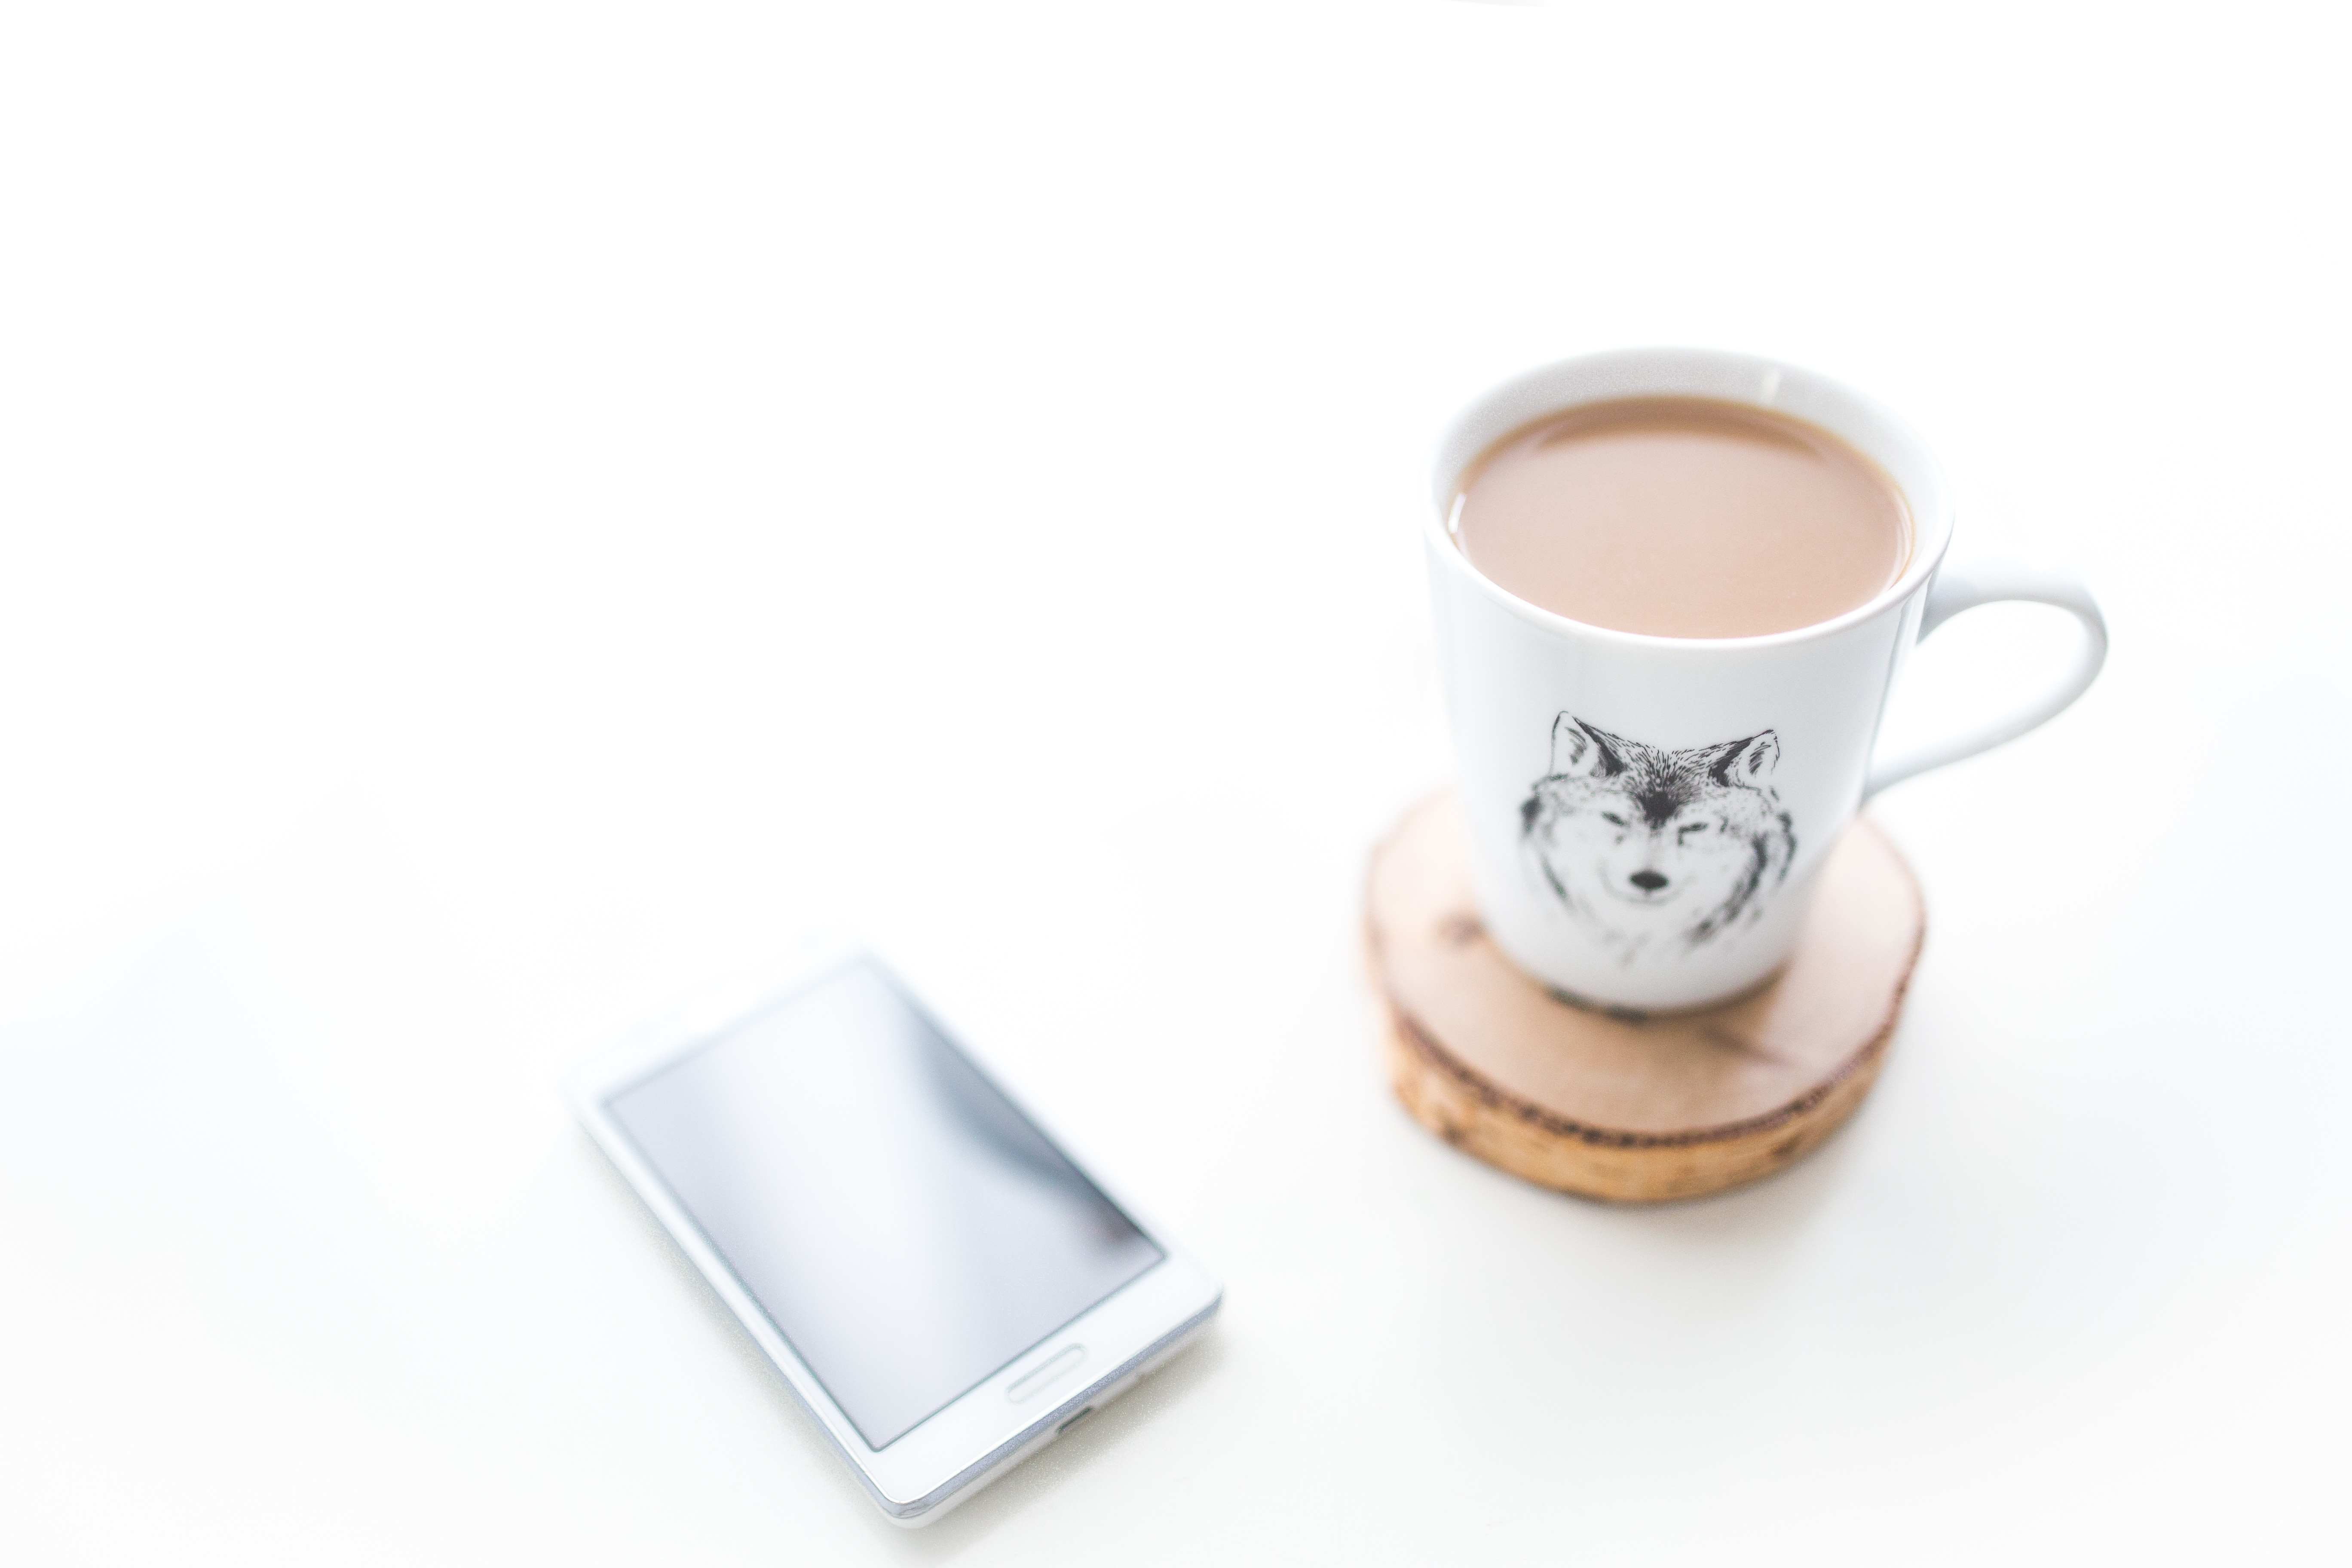 Бесплатное фото На письменном столе лежит телефон и чашка с кофе